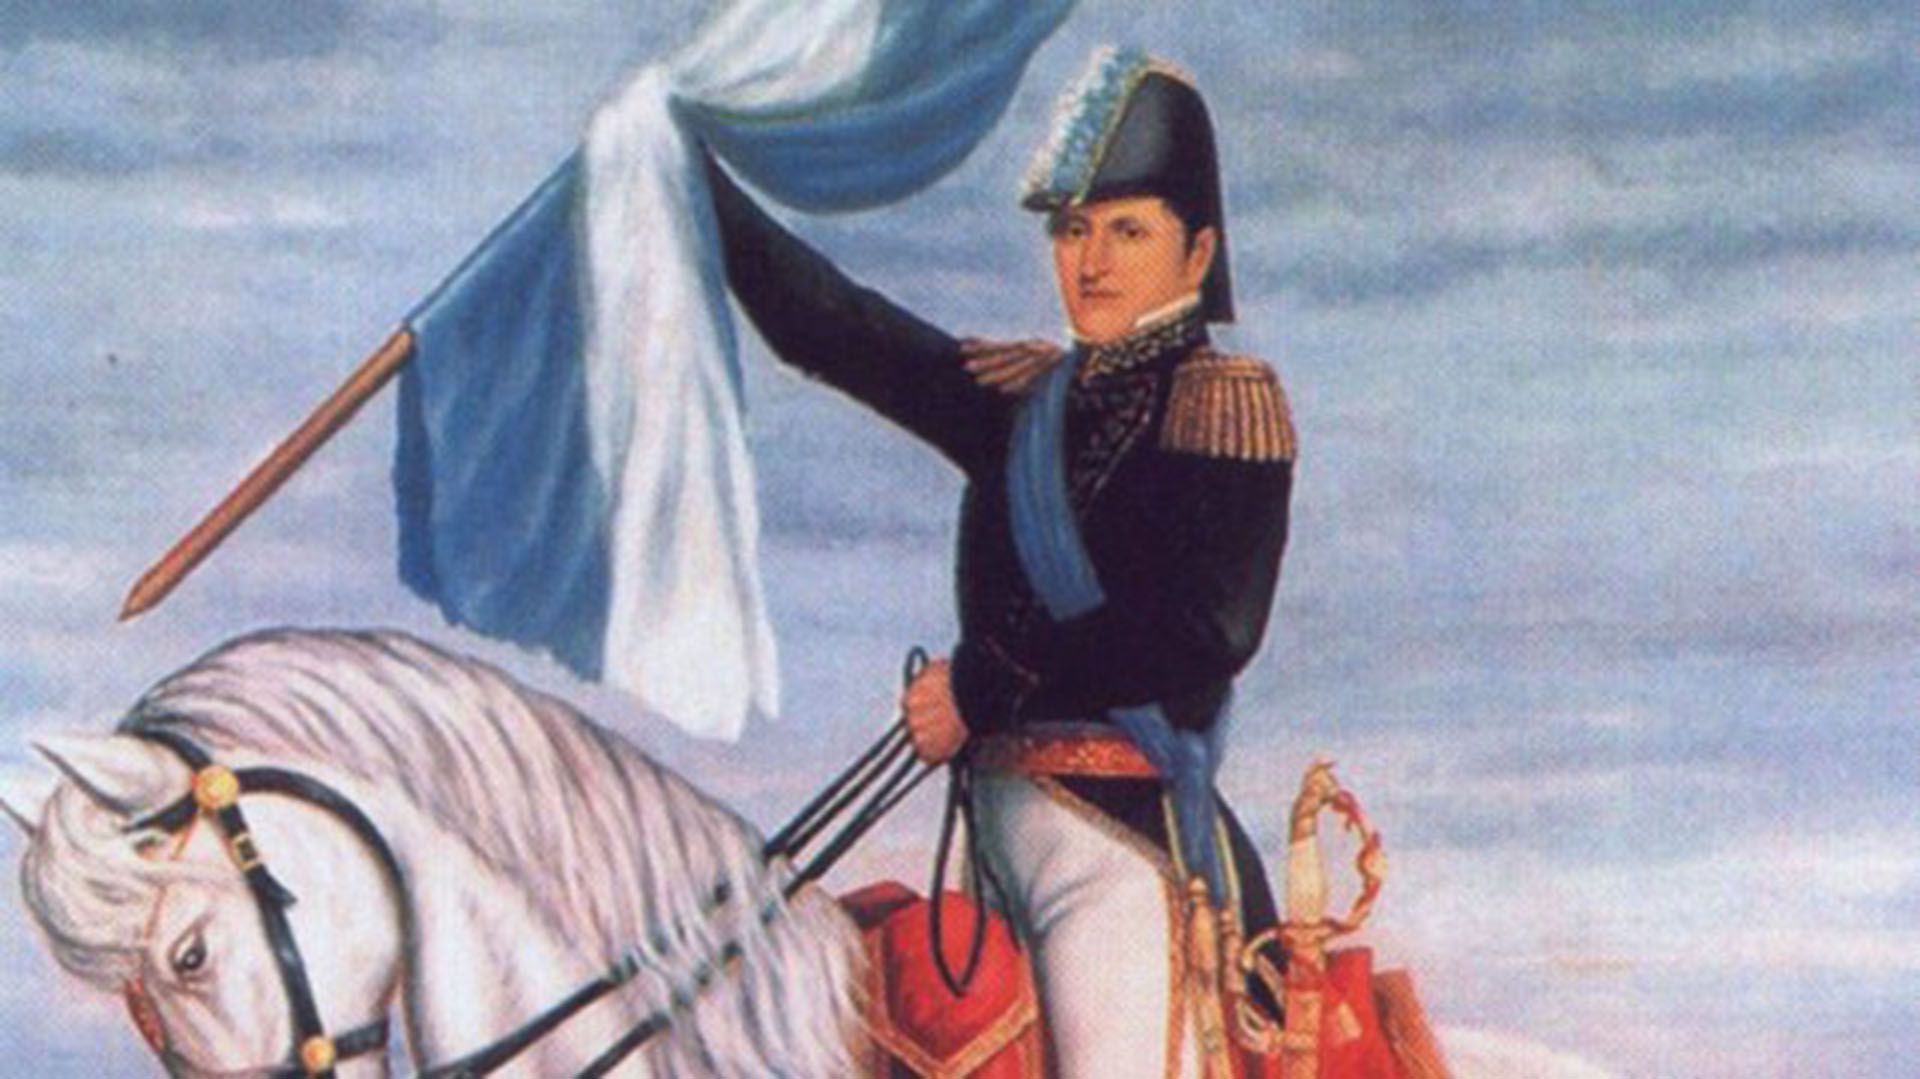 Belgrano participó en la defensa de Buenos Aires, capital del Virreinato del Río de la Plata, en las dos Invasiones Inglesas —1806 y 1807— y promovió la emancipación de Hispanoamérica respecto de España en apoyo a las aspiraciones de la princesa Carlota Joaquina en la región, aunque sin éxito.